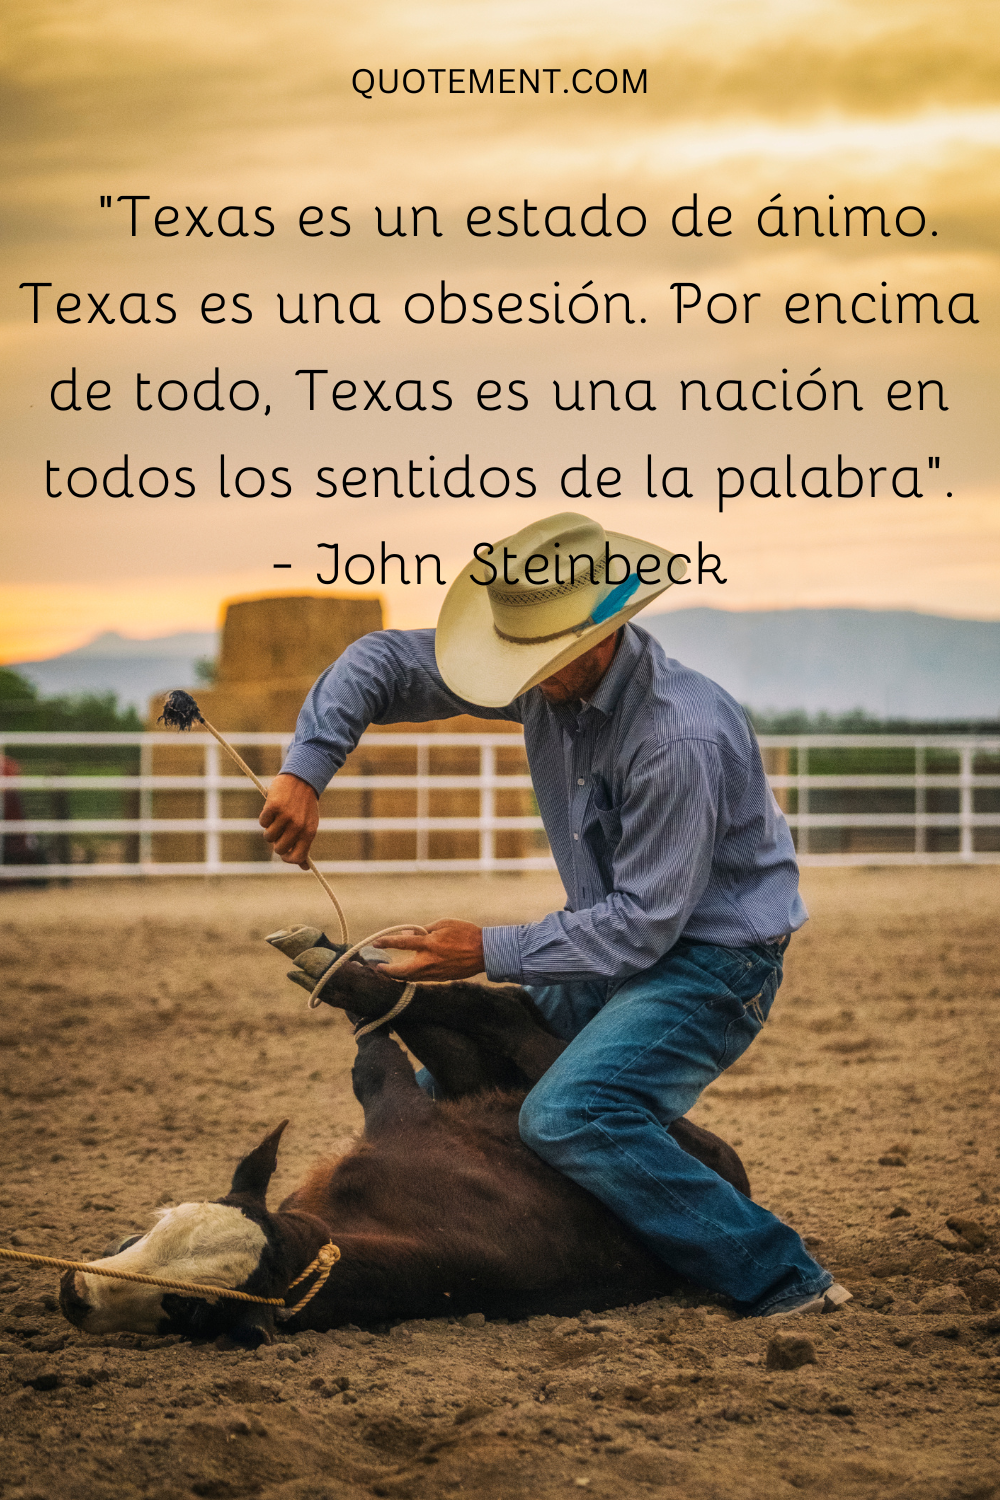 Texas es un estado de ánimo. Texas es una obsesión. Por encima de todo, Texas es una nación en todos los sentidos de la palabra. - John Steinbeck